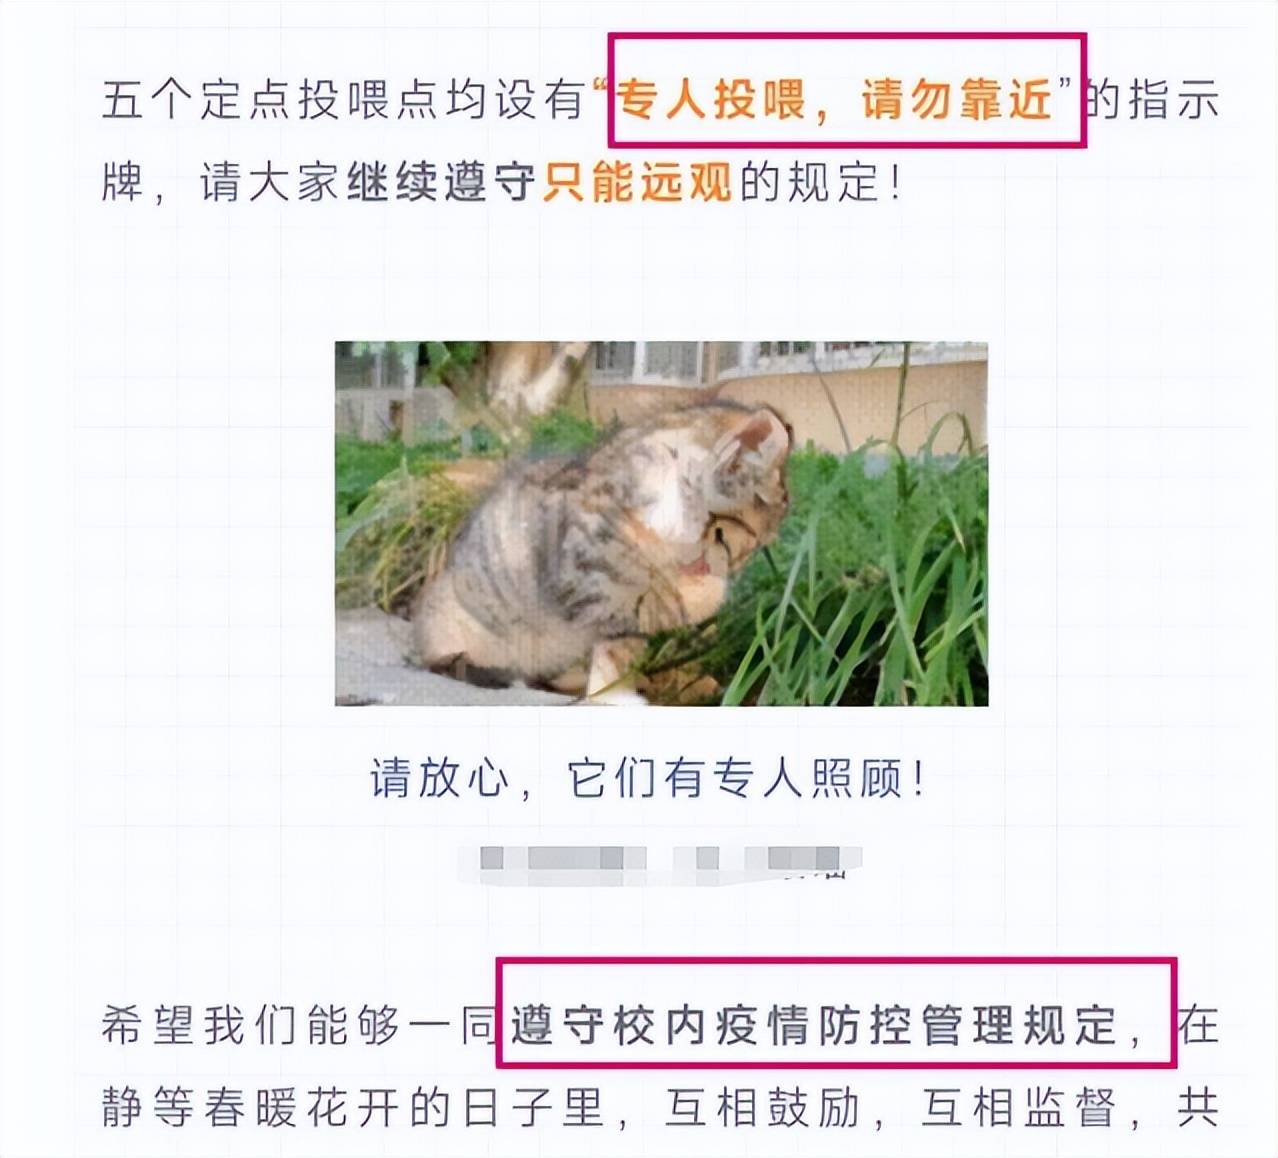 原创             上海交大博士逗猫被处分，爱猫人士懵了，校方回应是“顶风作案”